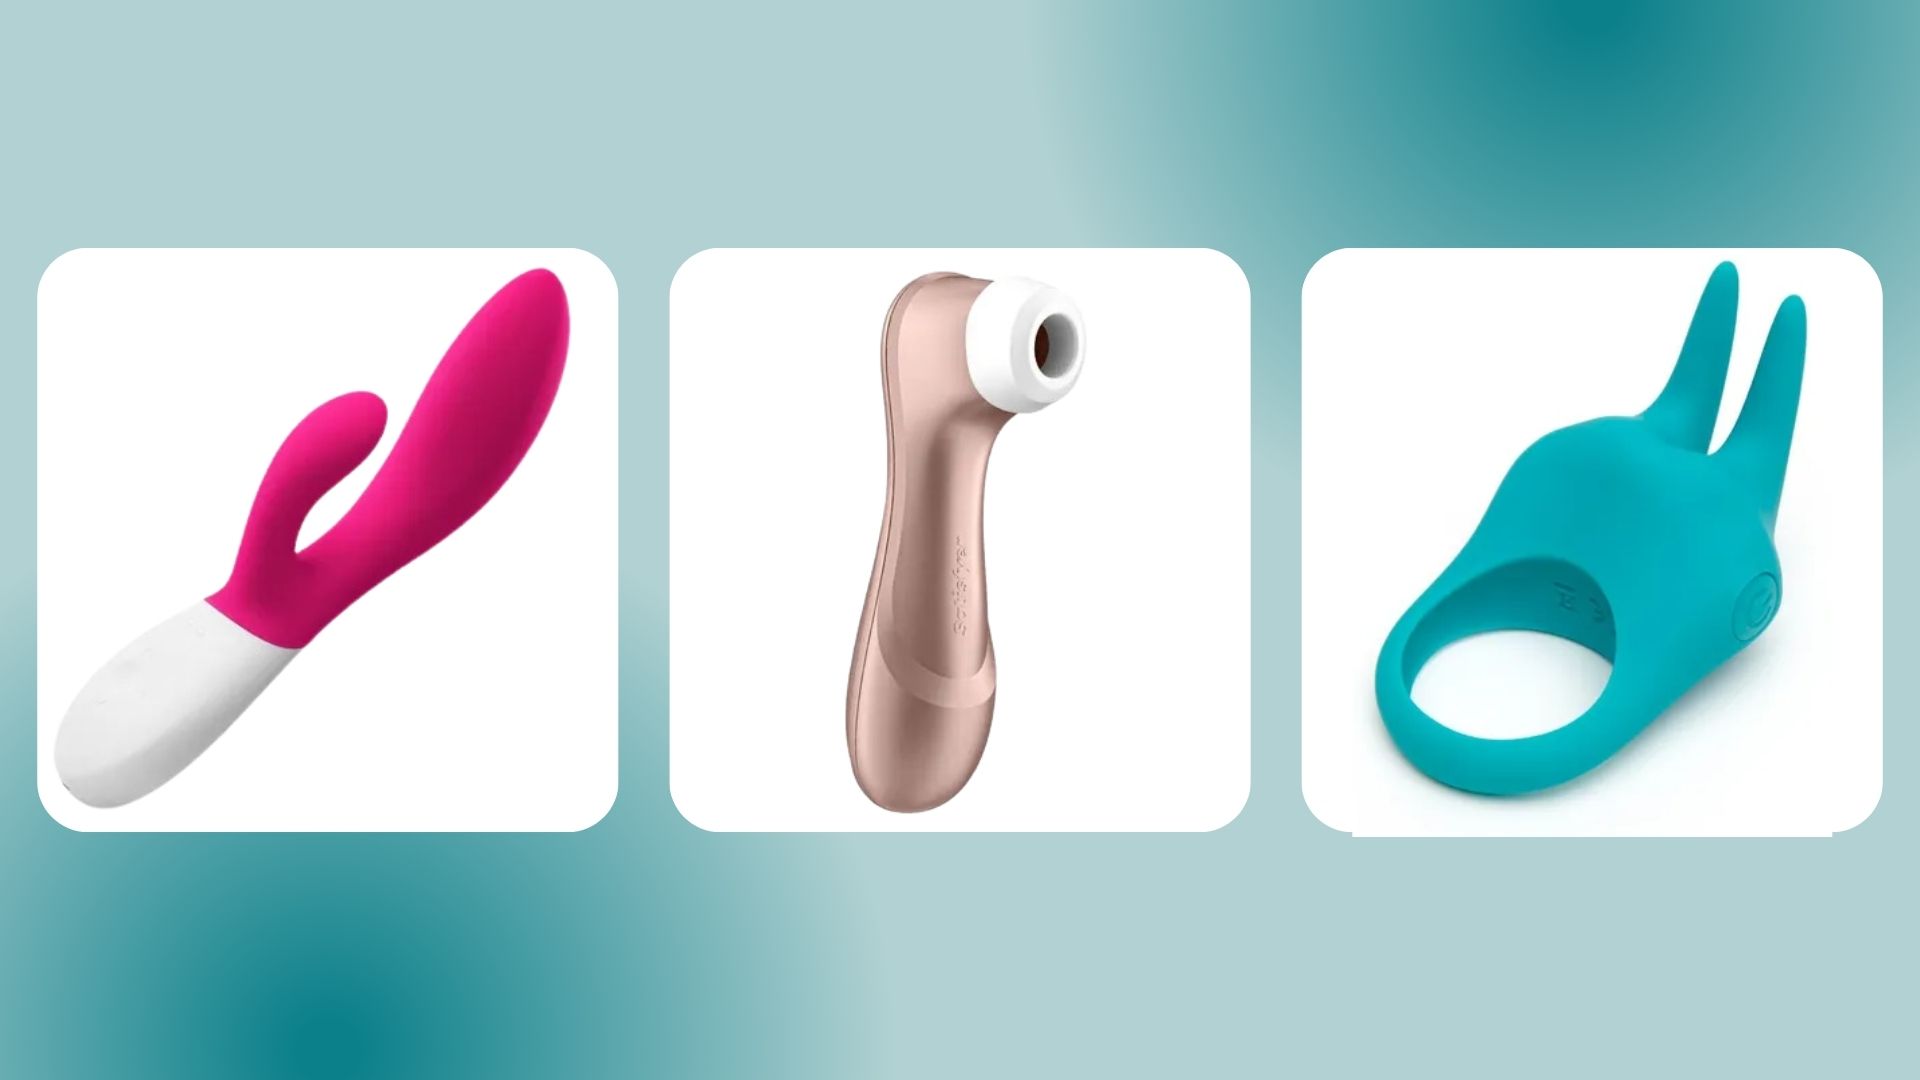 Vibrators Penis Vibrator For Couple Clitoral Stimulation Sex Toys